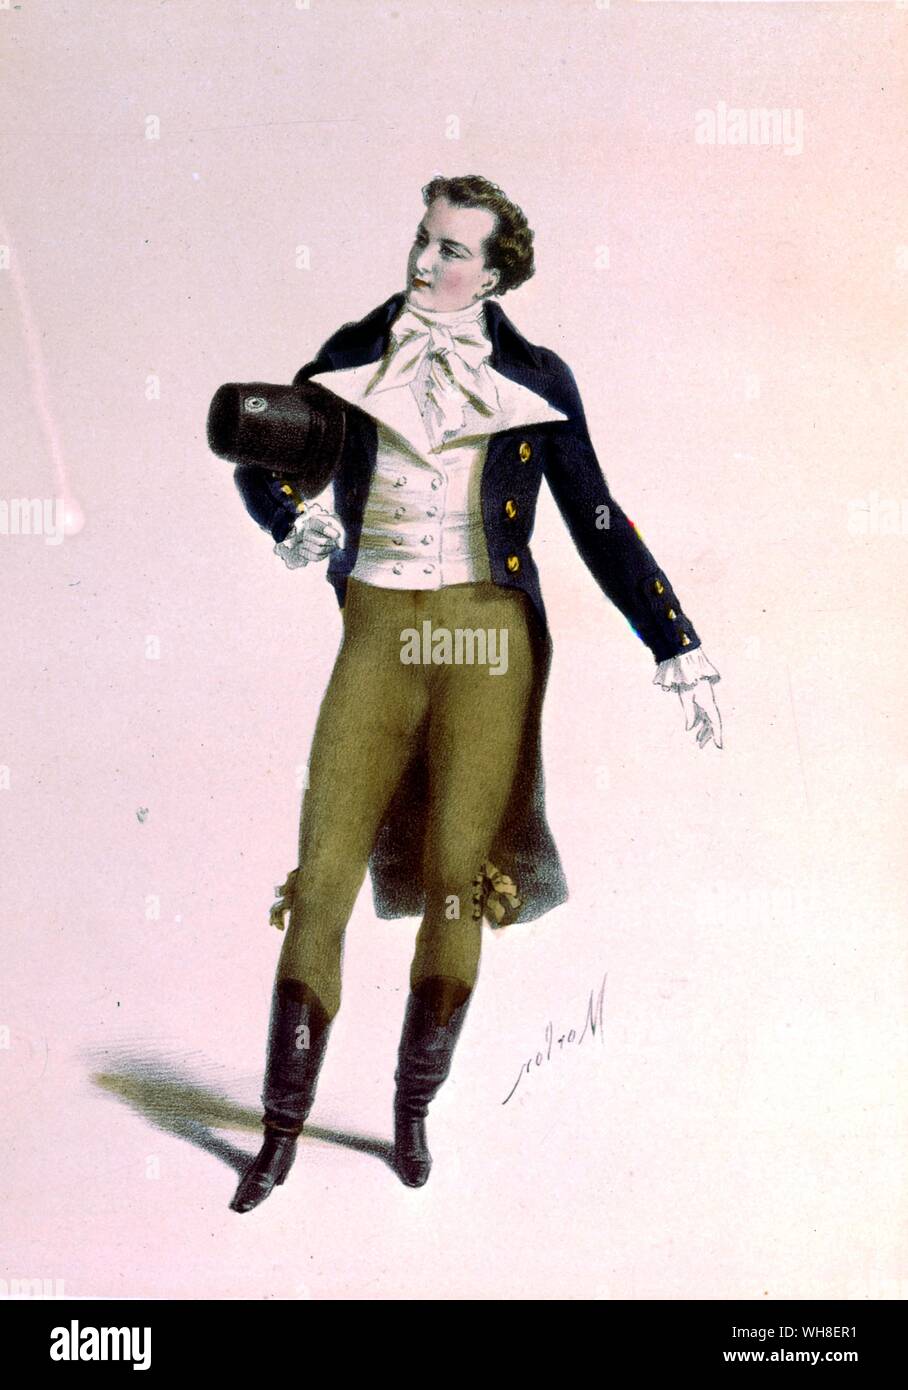 Der Schauspieler Bressant als Humbert in Le Lion Amoureux (Der Löwe in der Liebe), Kostüme (Kostüme des Theater der Theater) 1860. Von La Vie Parisienne von Joanna Richardson (1860). Stockfoto